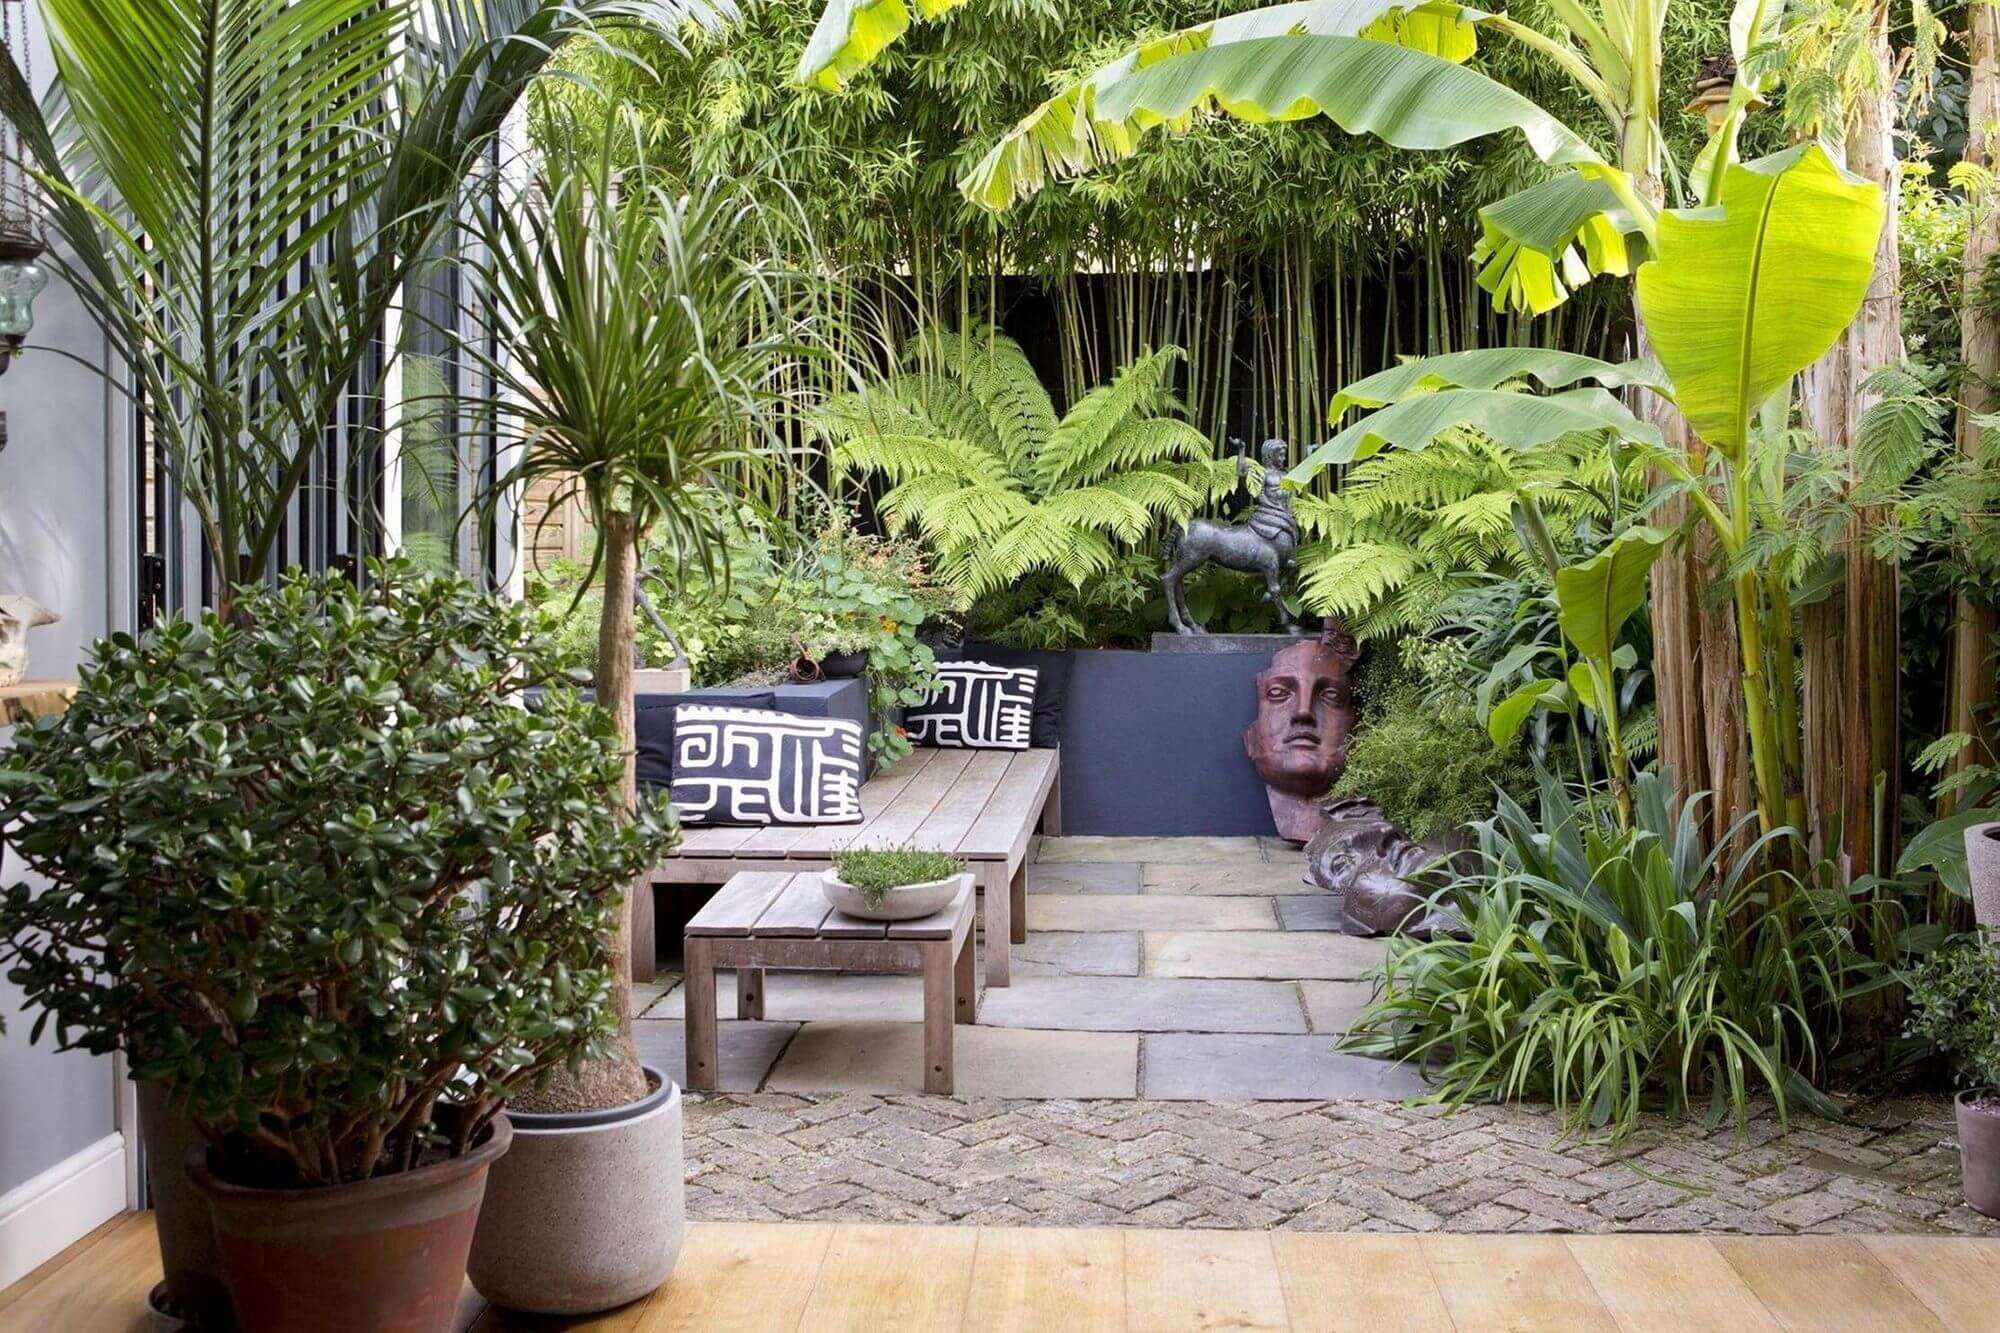 13- Mini garden, maxi tropical plants